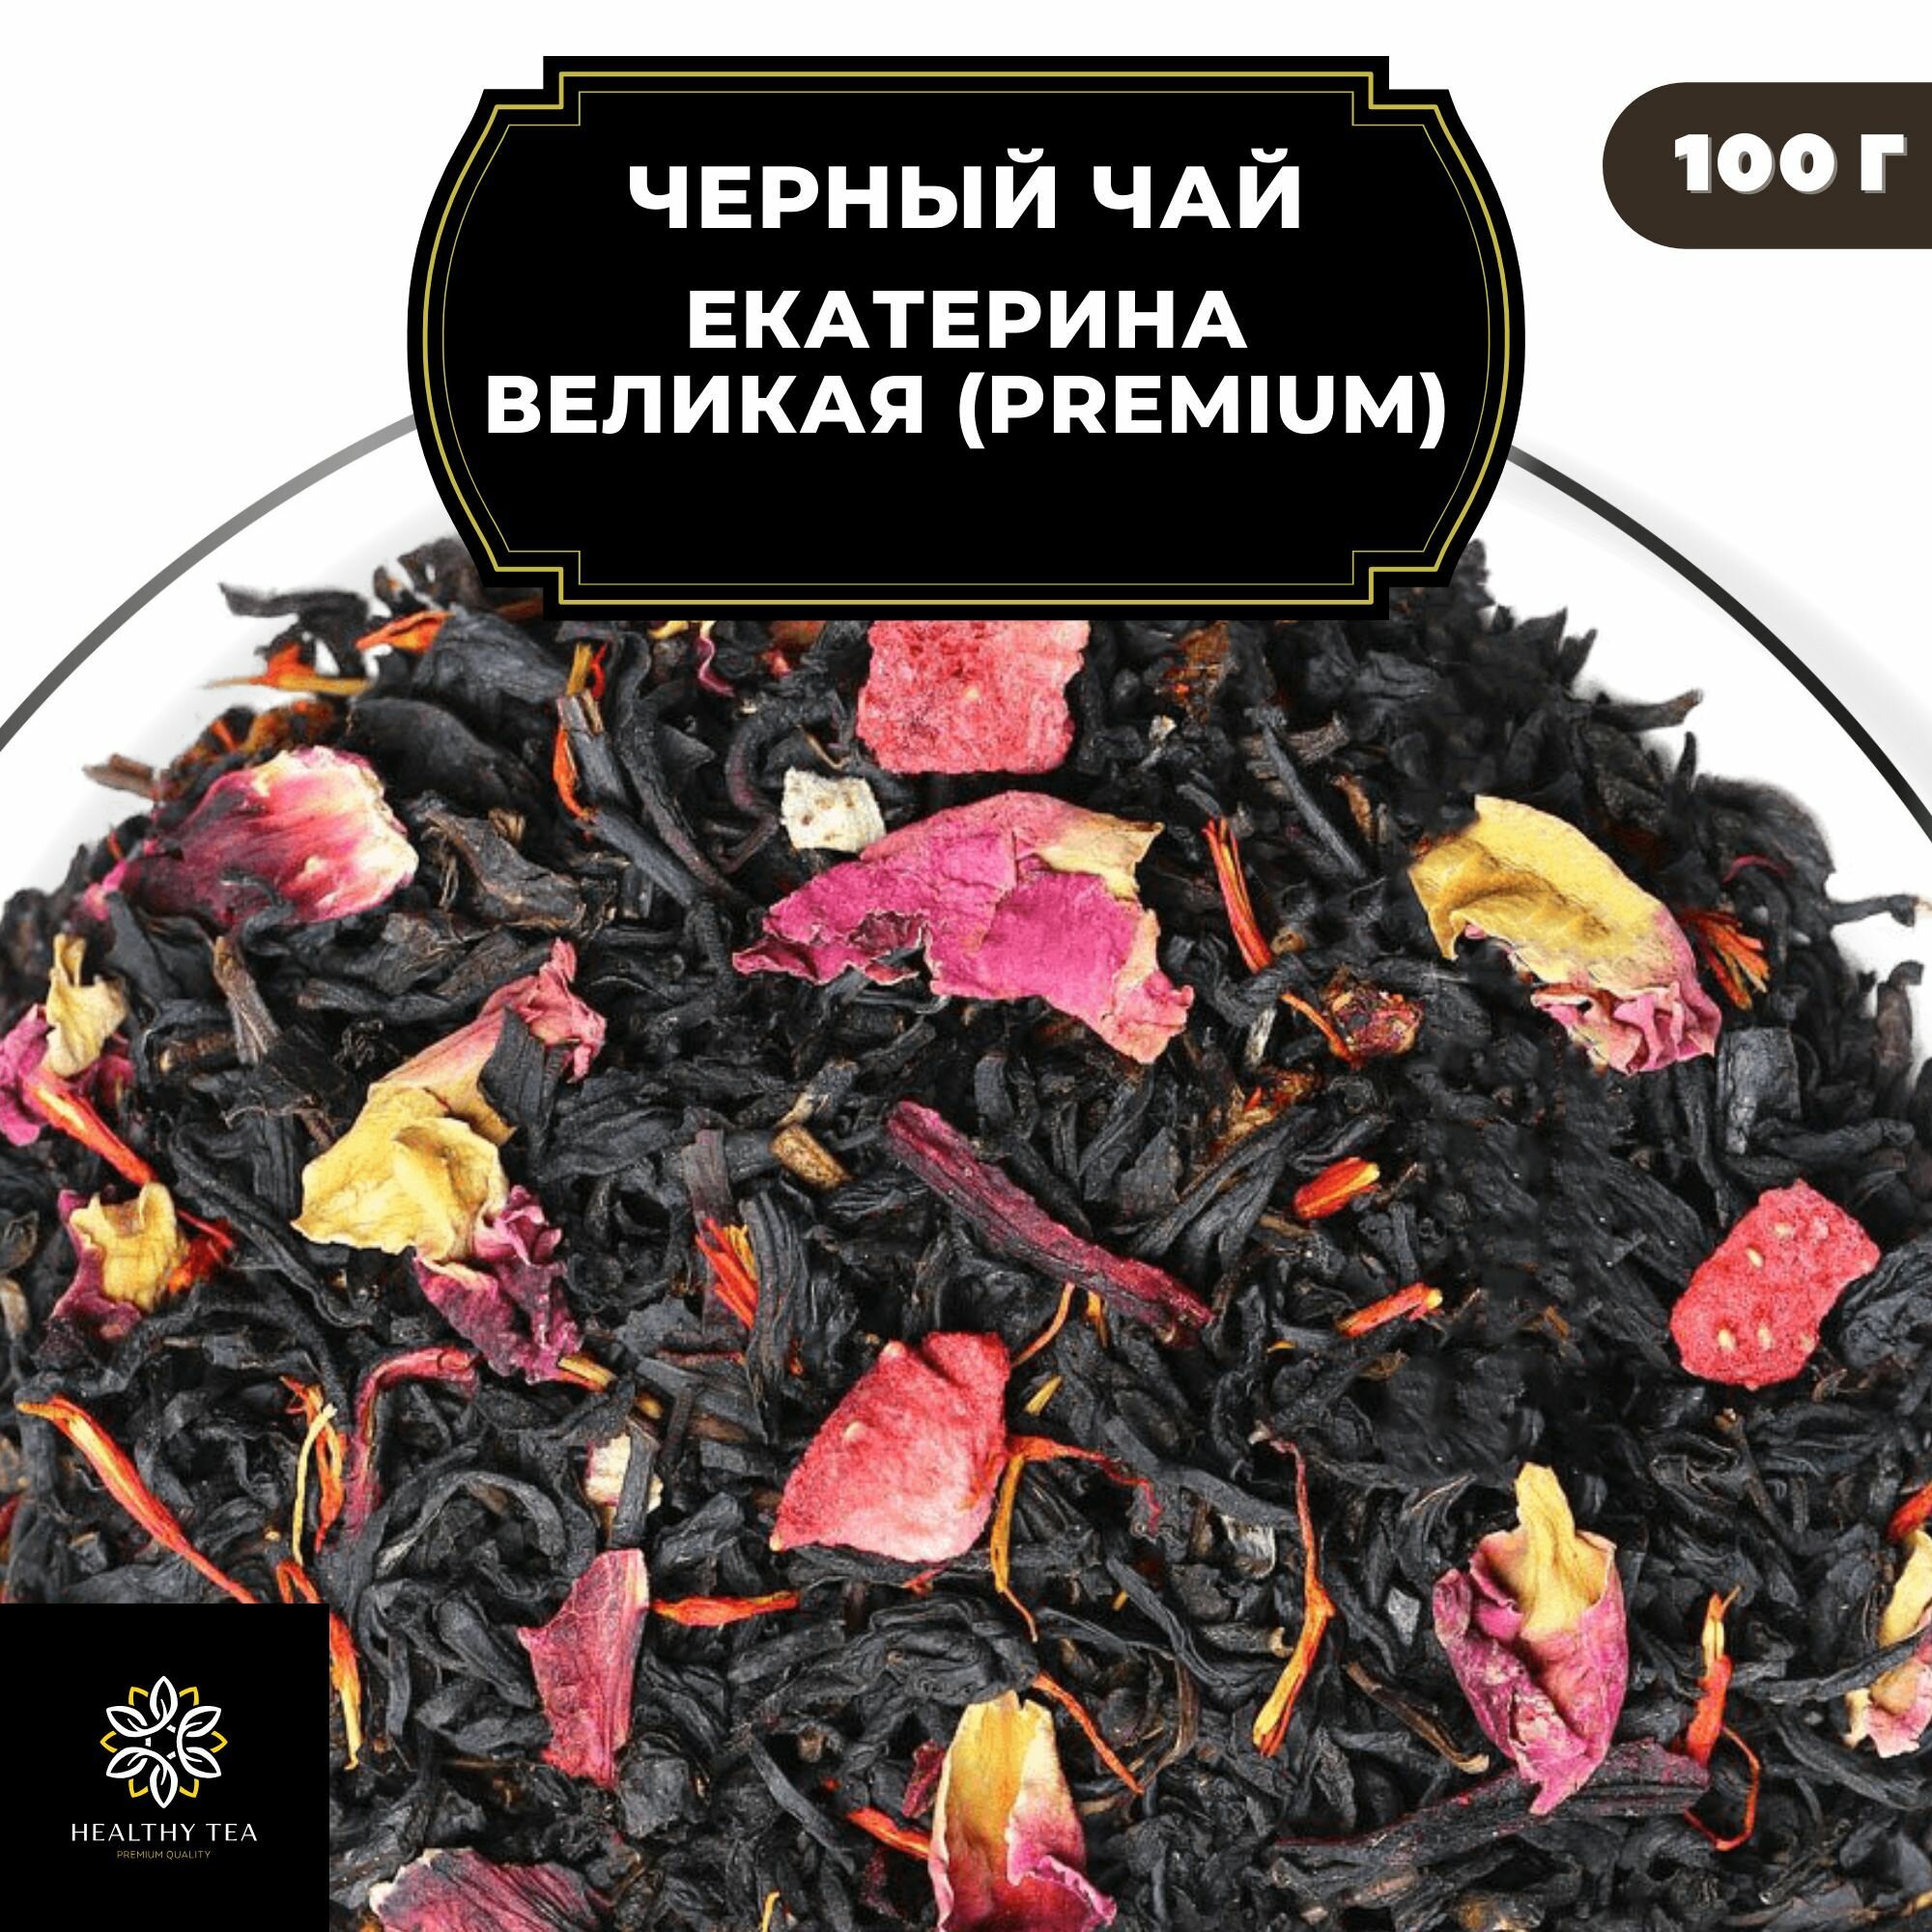 Индийский Черный чай с каркаде, клубникой и розой "Екатерина Великая" (Premium) Полезный чай / HEALTHY TEA, 100 гр